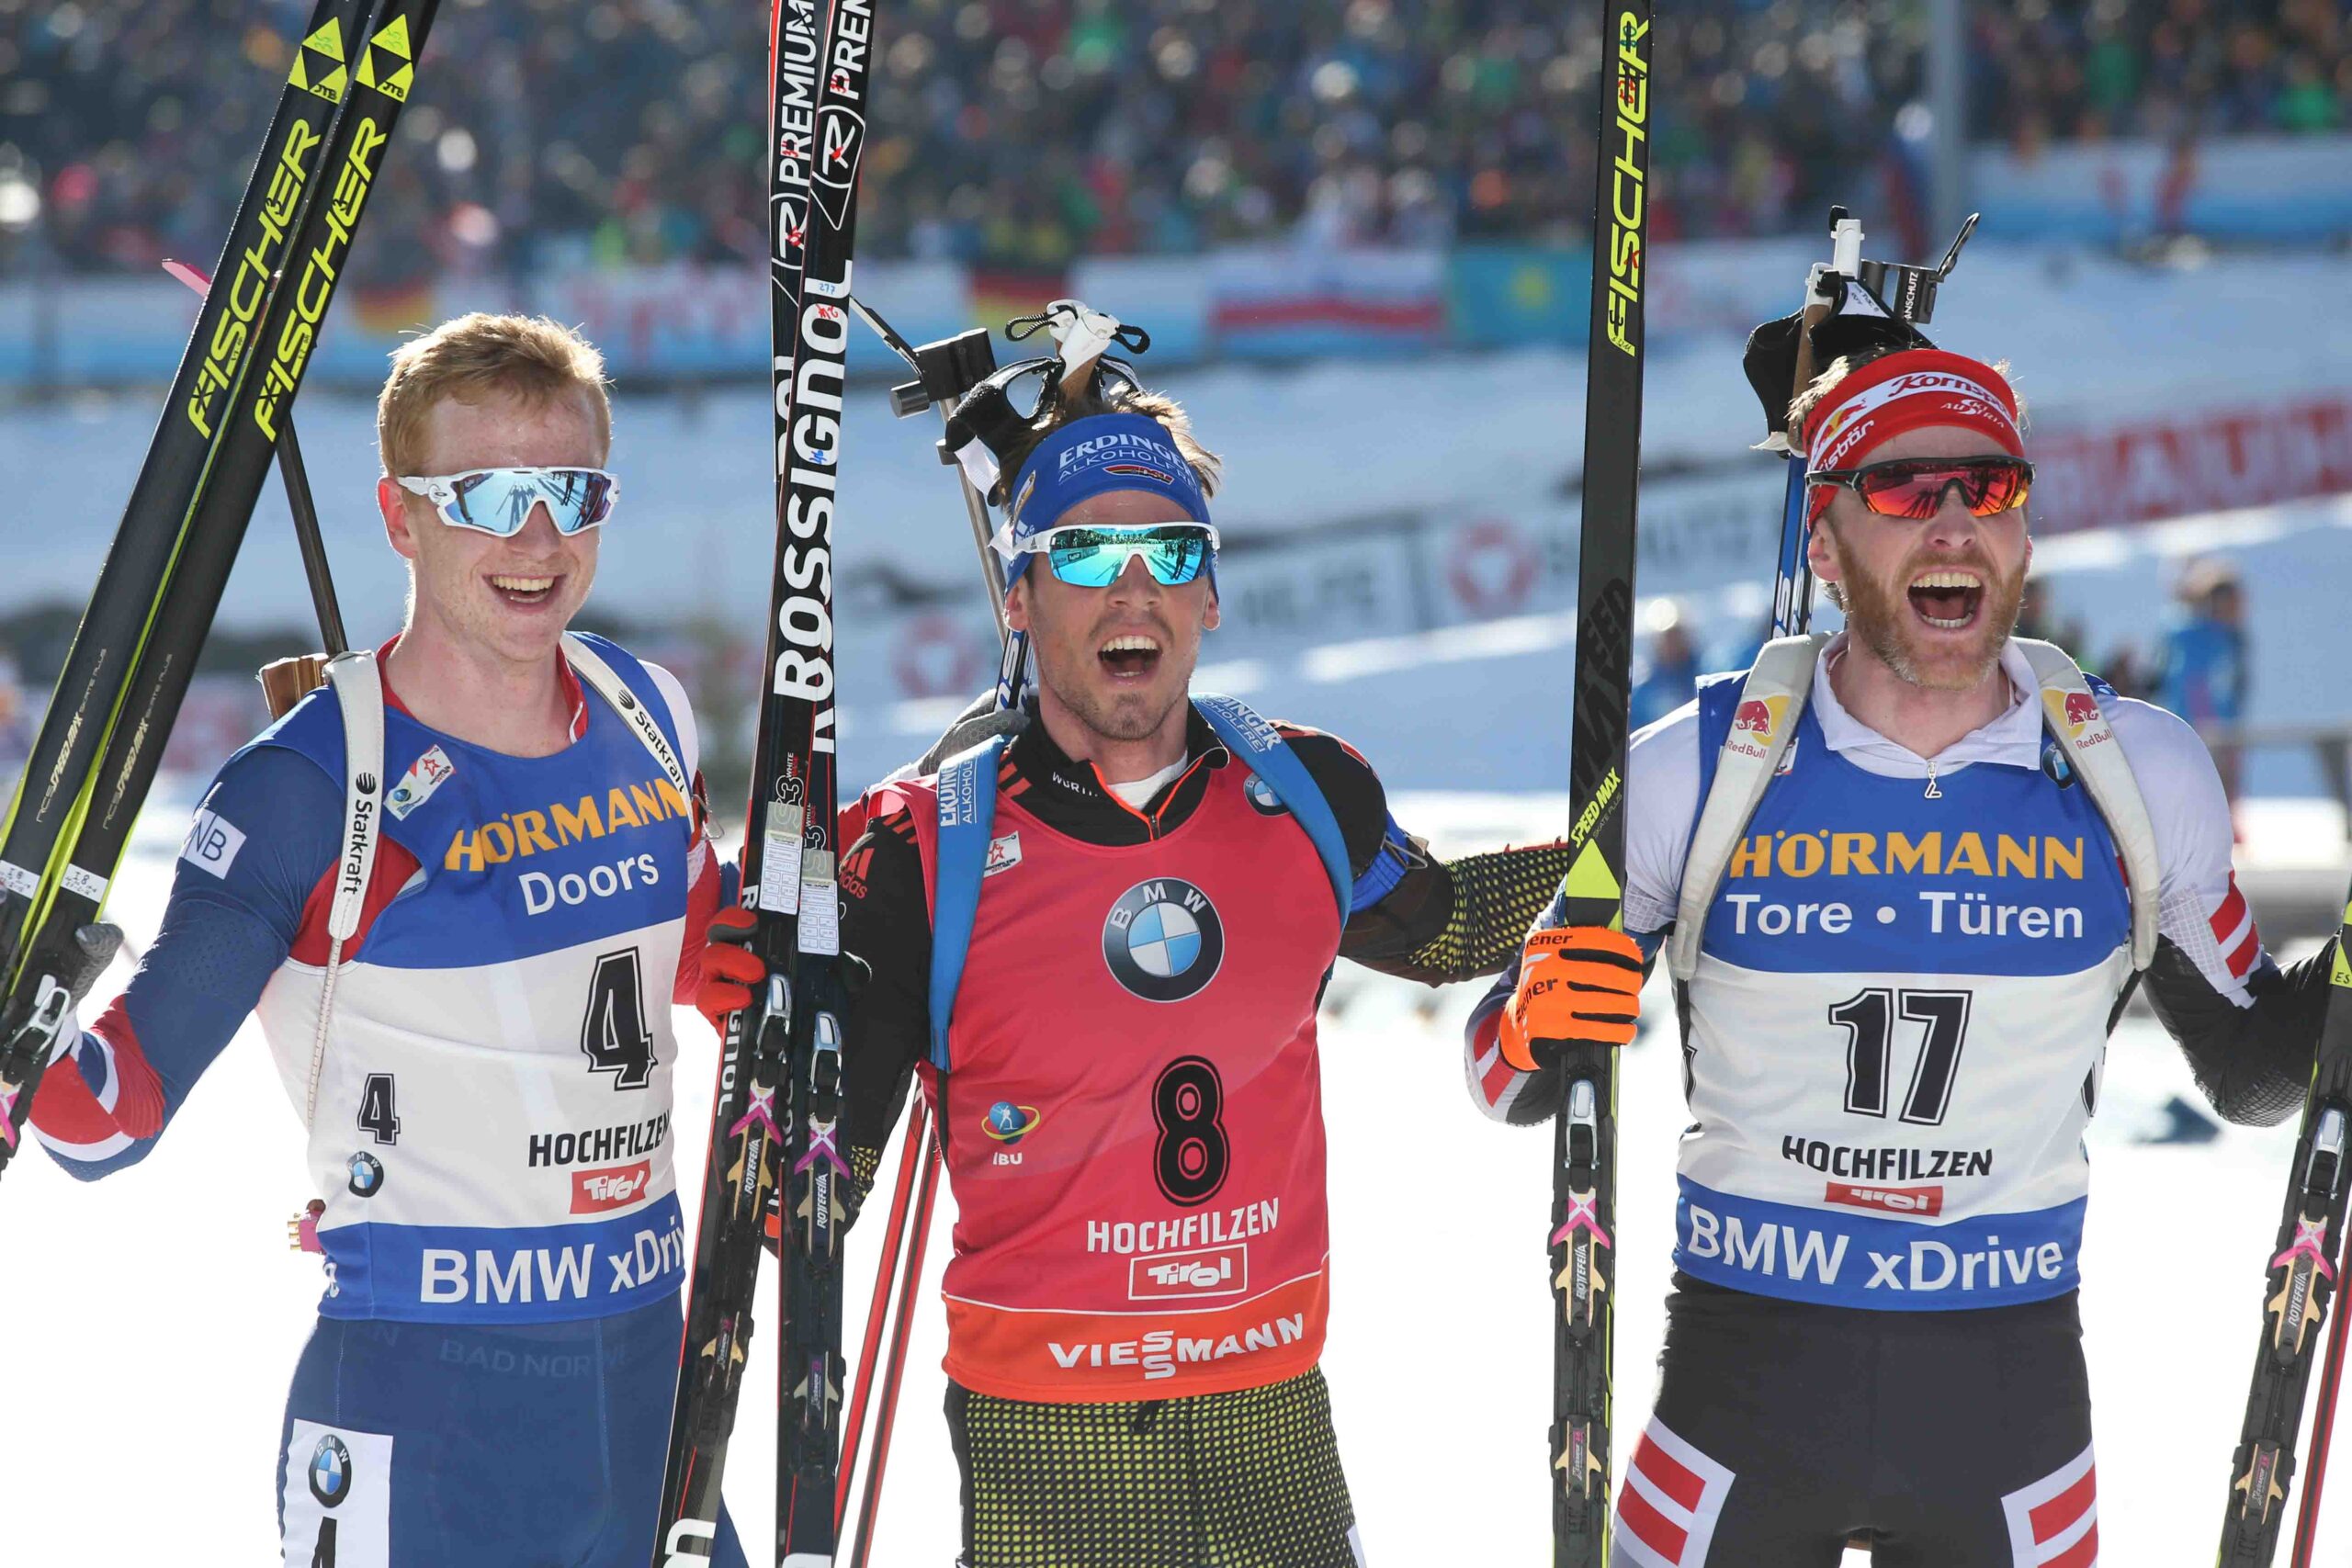 Triple médaille d'argent aux Championnats du monde pour Johannes Thingnes Bø - 3